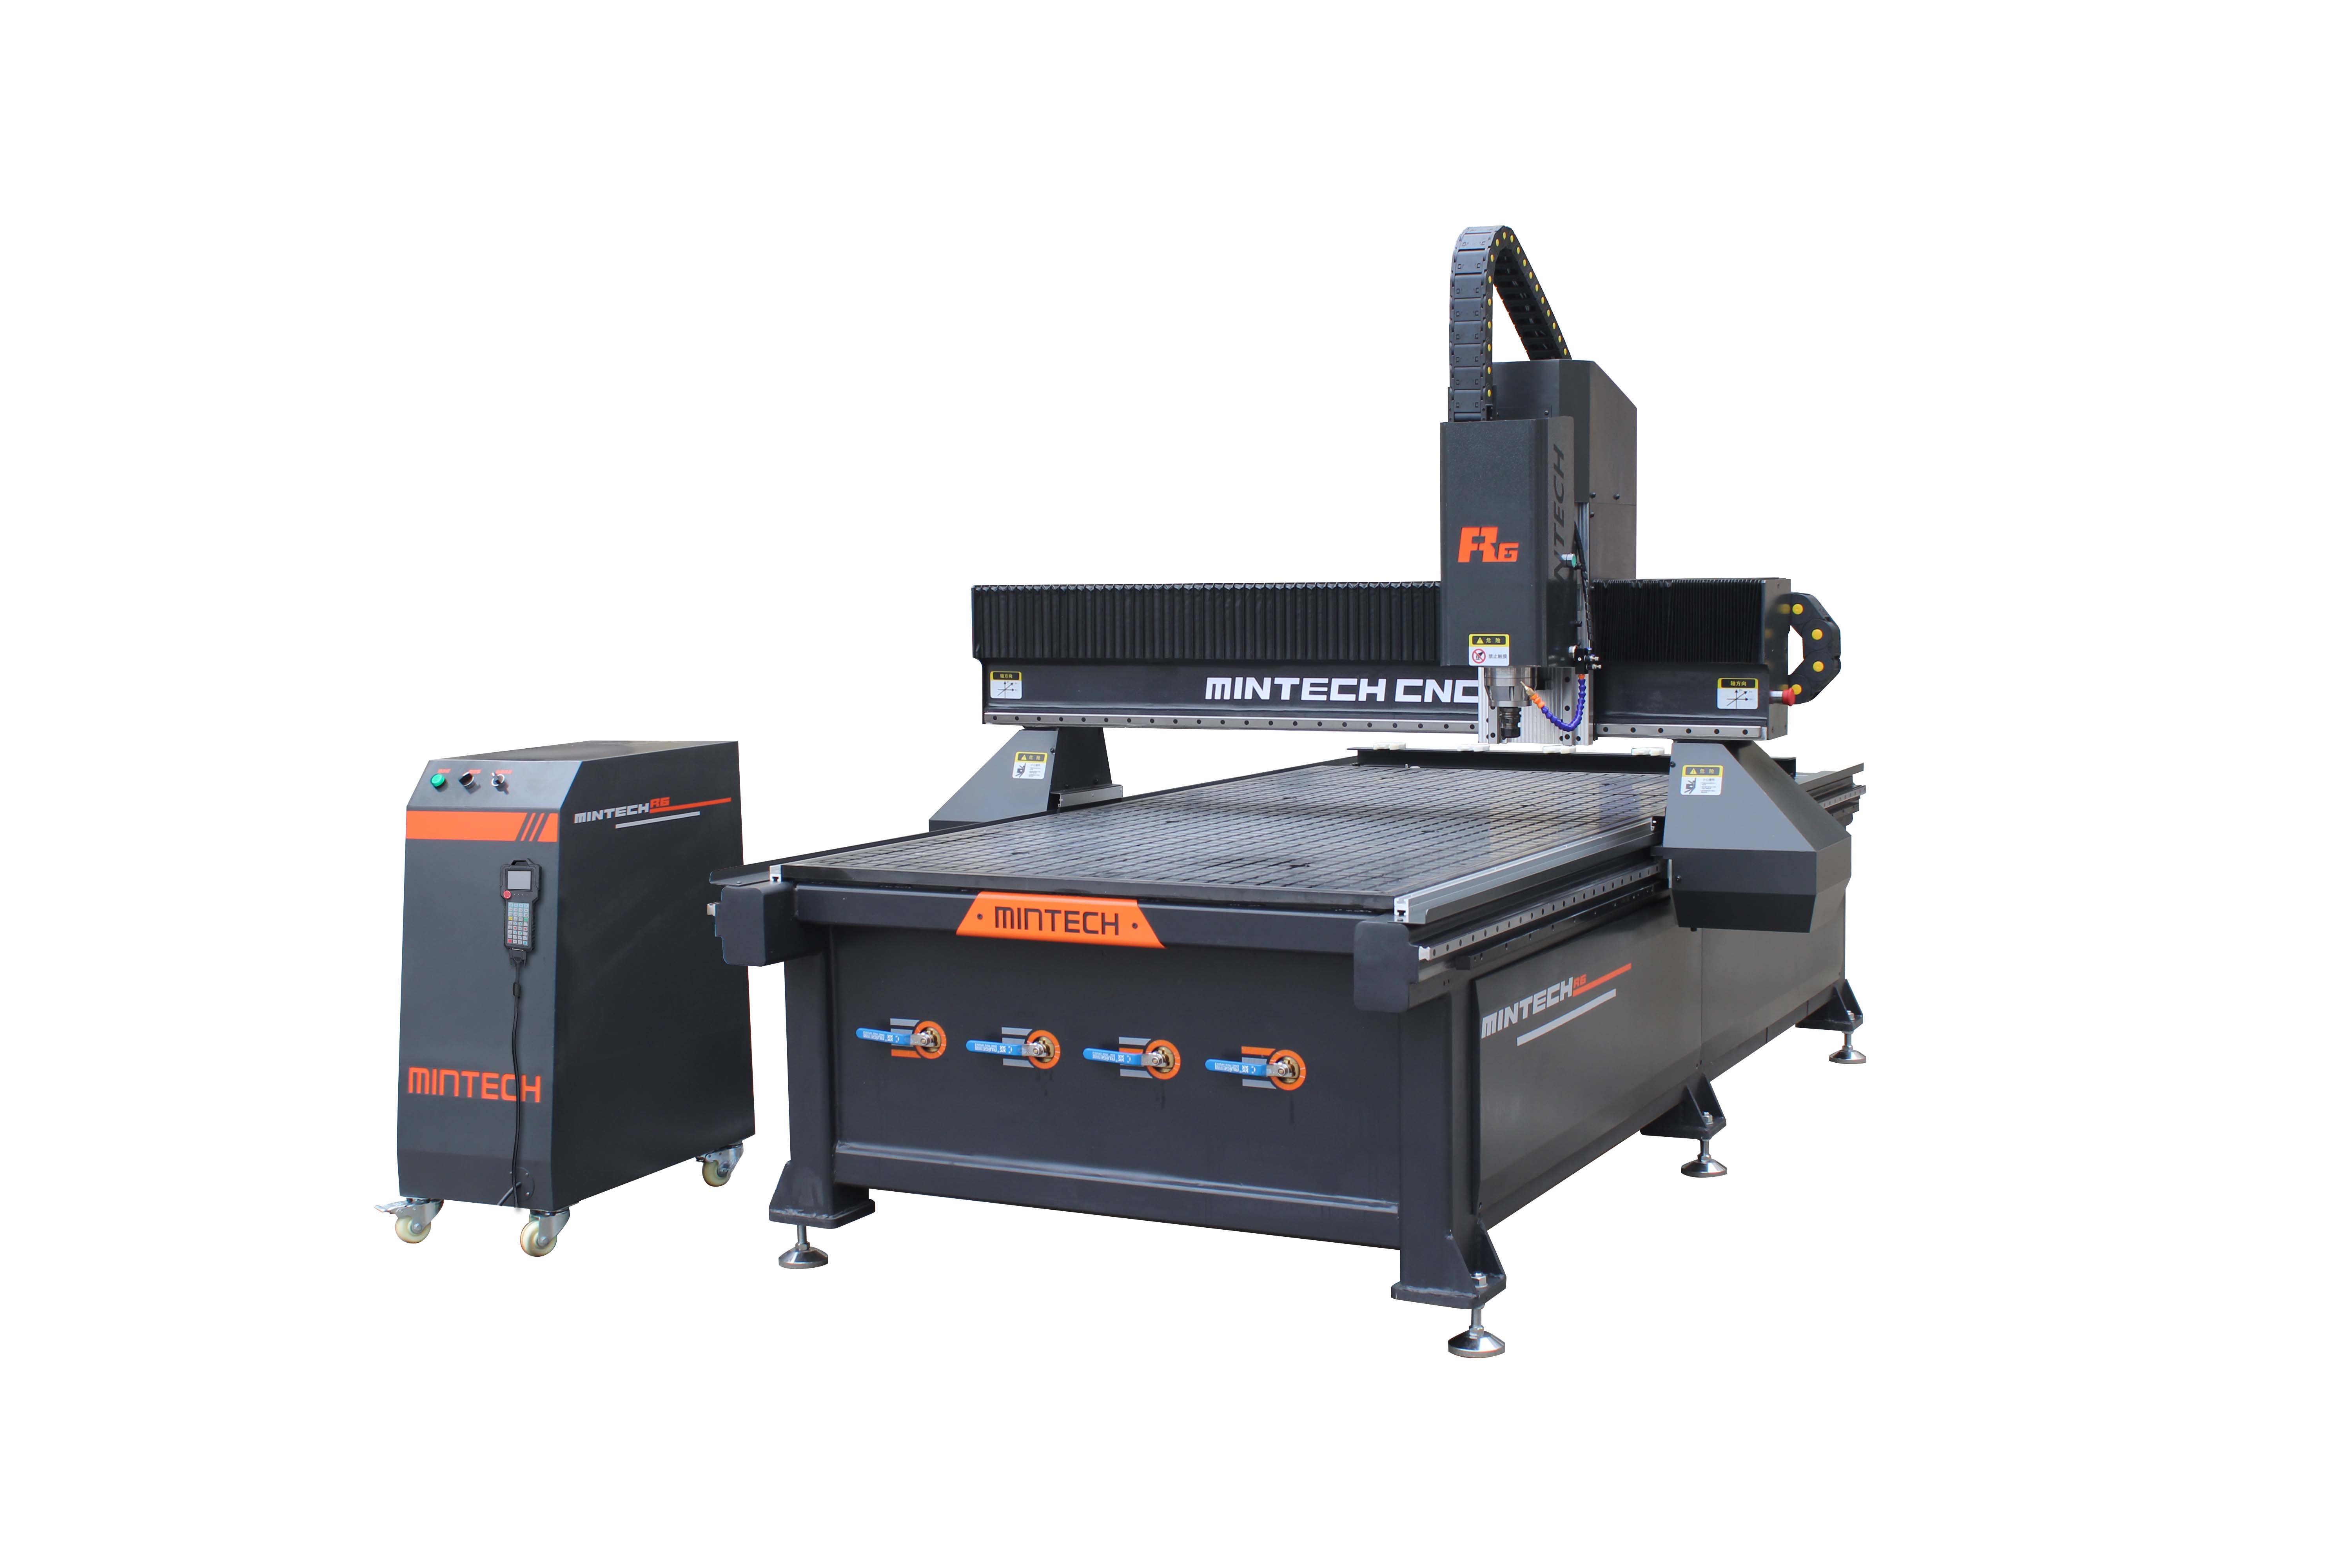 R6 CNC engraving machine